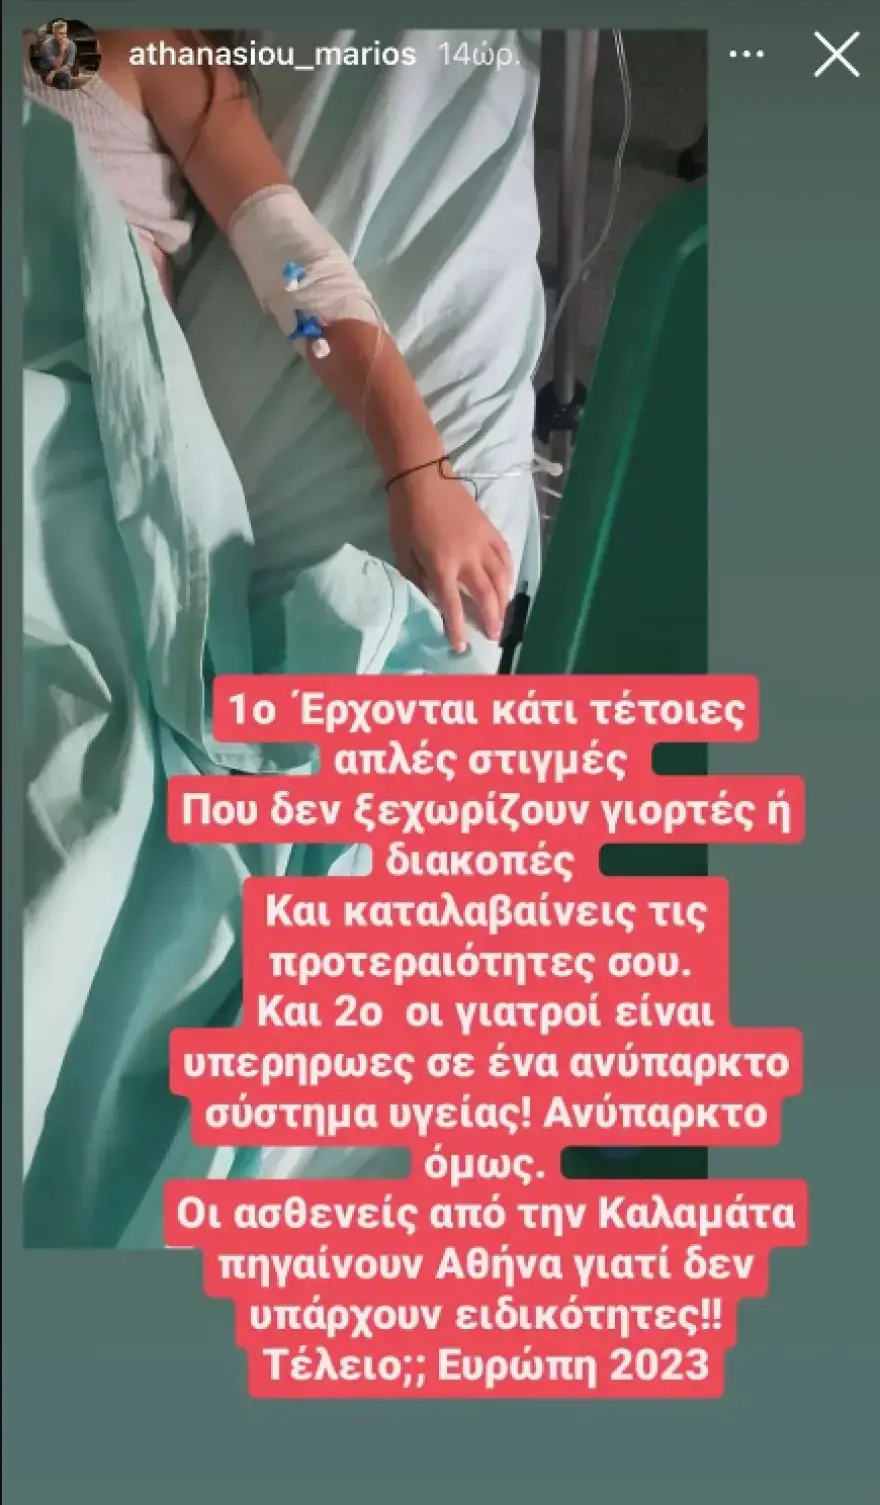 Μάριος Αθανασίου: Στο νοσοκομείο η κόρη του - Η ανάρτησή του - ΕΛΛΑΔΑ